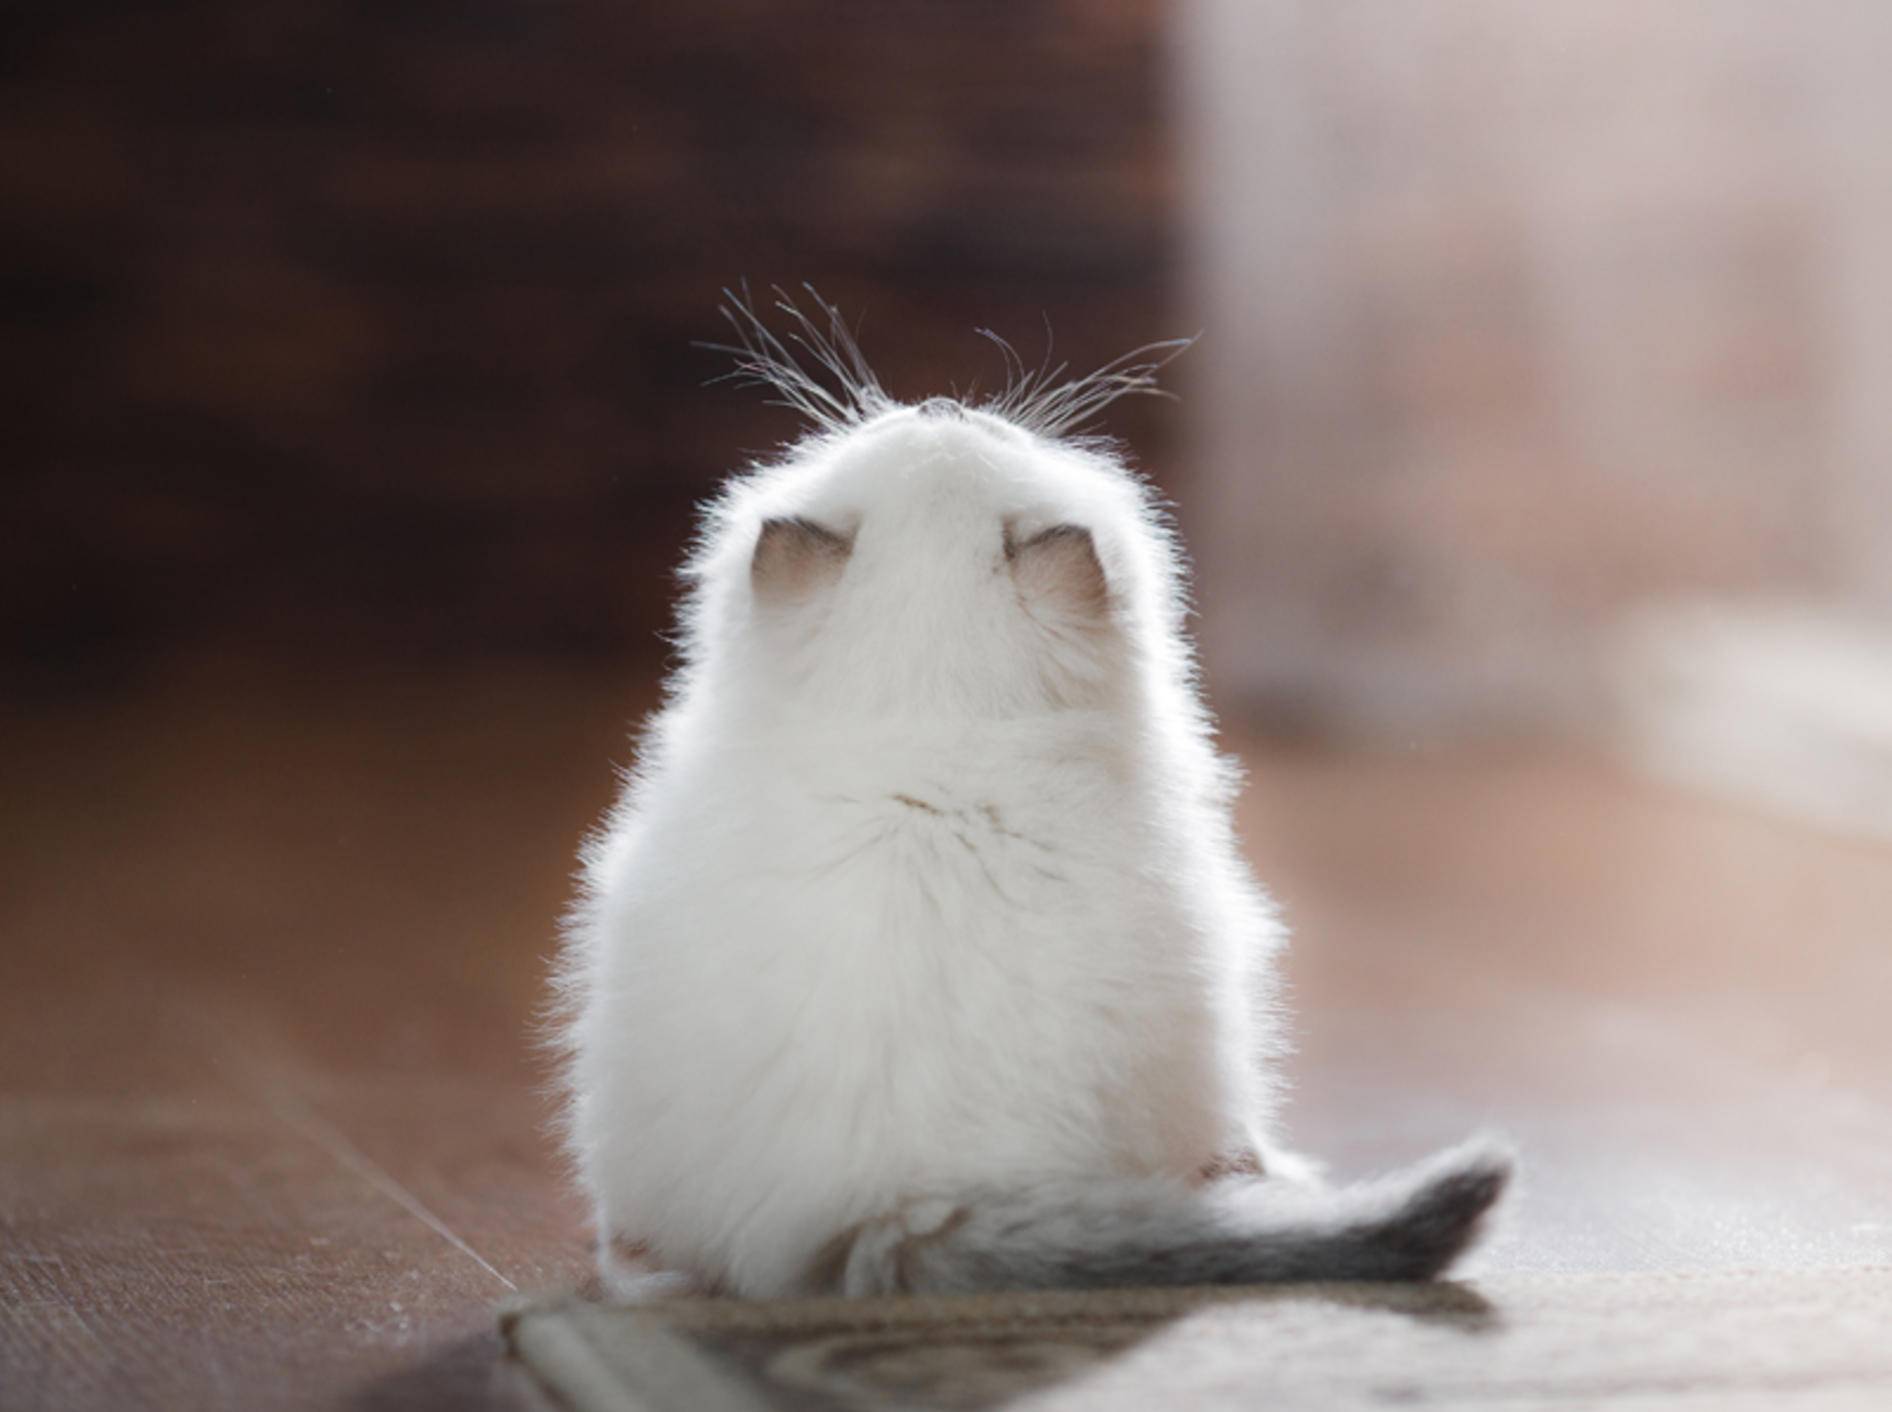 "Ui, sooo viel gibt es über uns zu wissen!", staunt dieses zuckersüße Ragdoll-Katzenbaby – Shutterstock / dezi